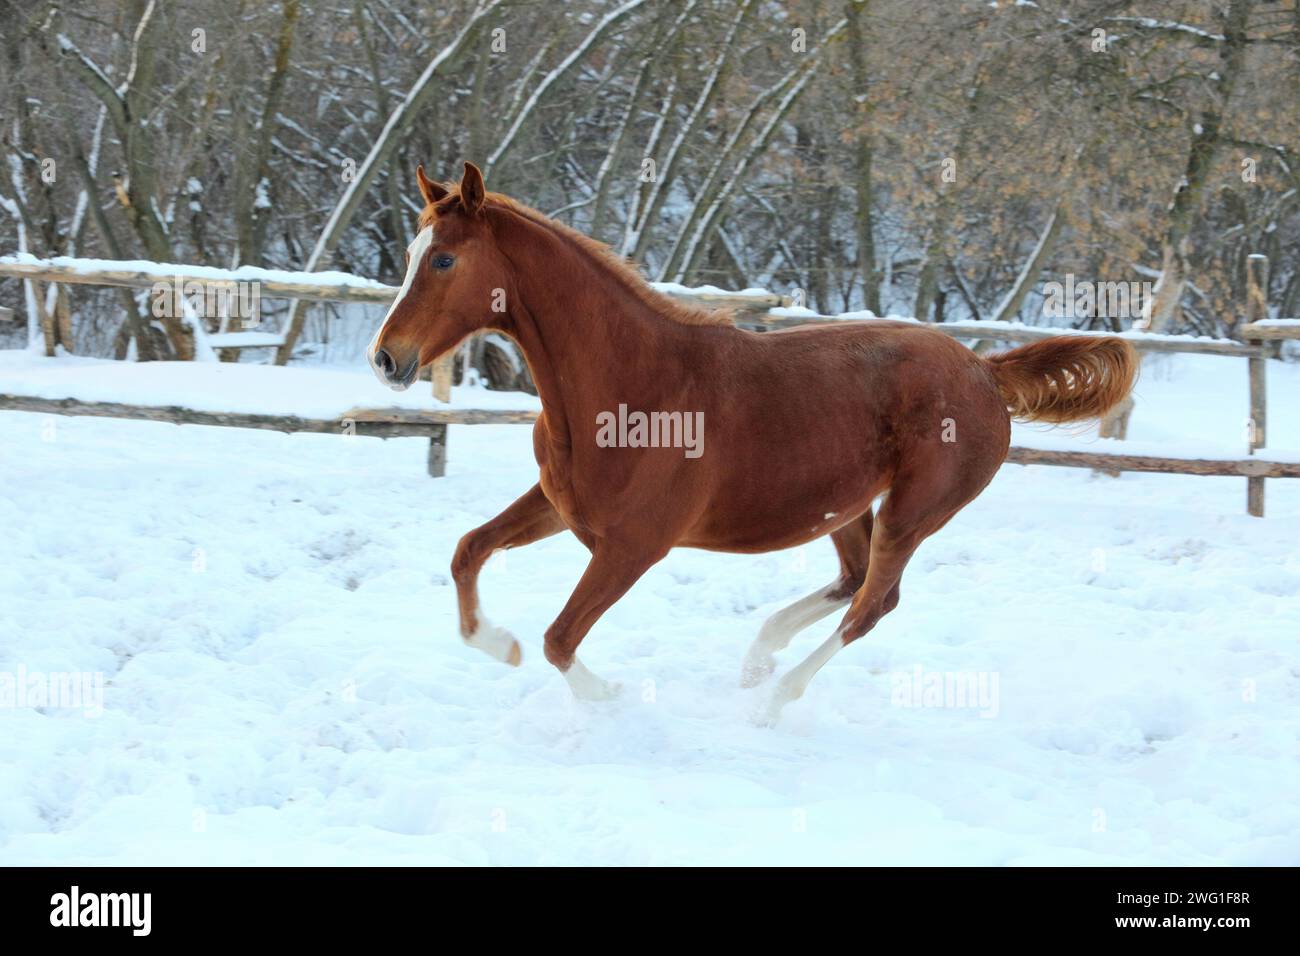 Chestnut race horse runs gallop in winter farm Stock Photo